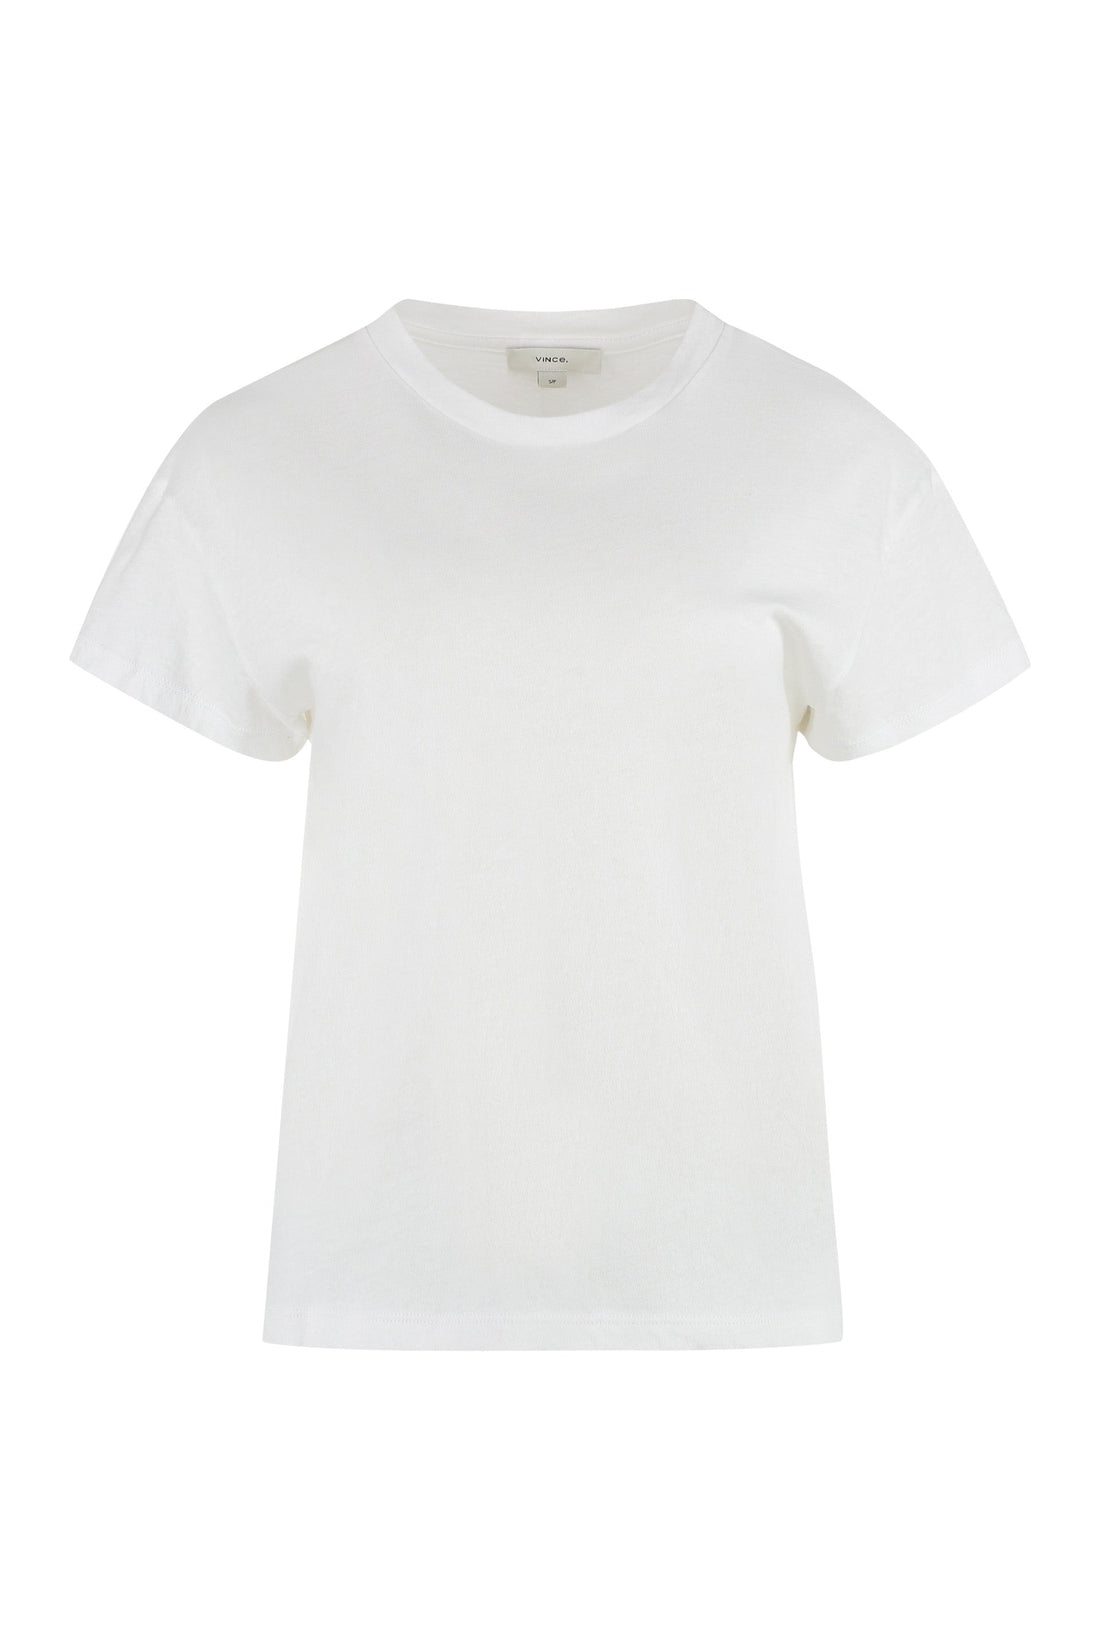 Vince-OUTLET-SALE-Cotton-linen blend T-shirt-ARCHIVIST